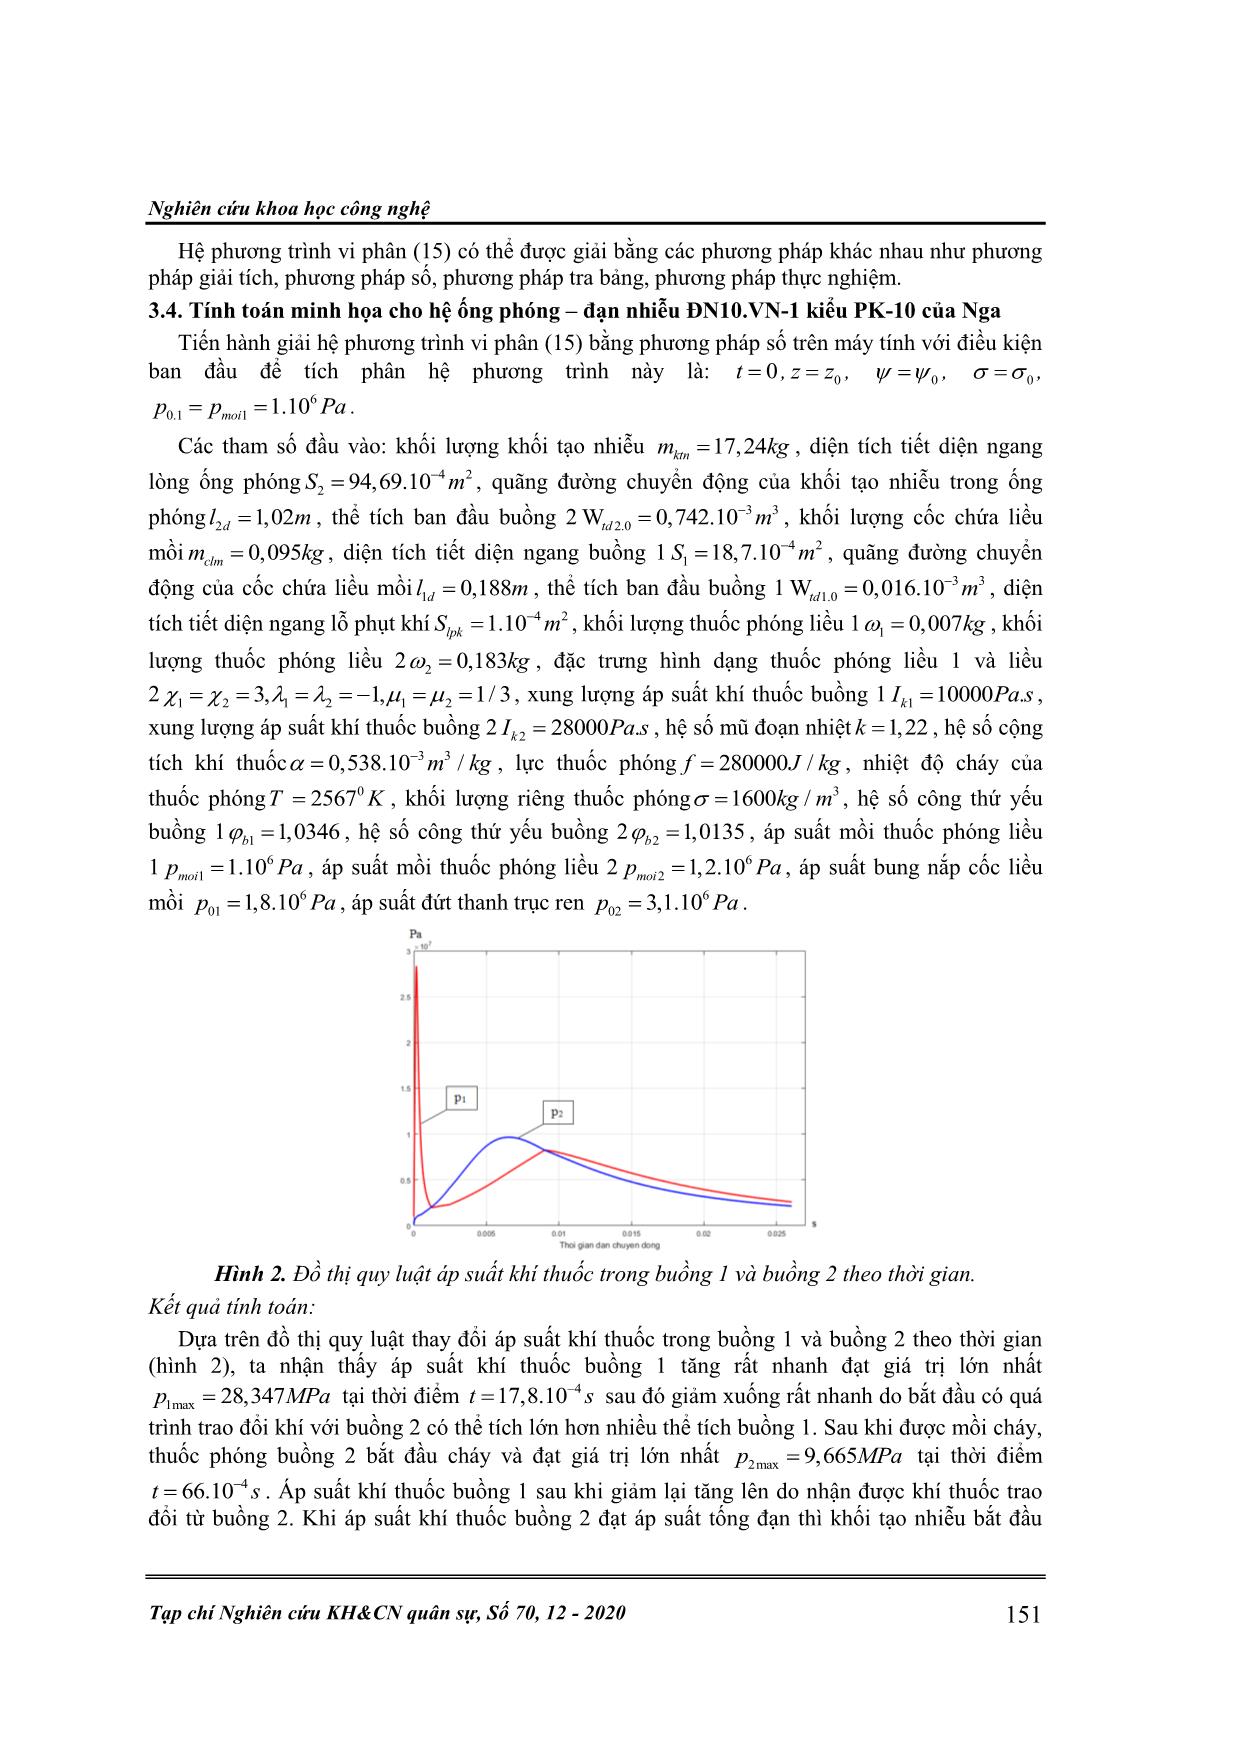 Nghiên cứu, xây dựng mô hình bài toán thuật phóng trong của đạn nhiễu ĐN10.VN-1 trang 6